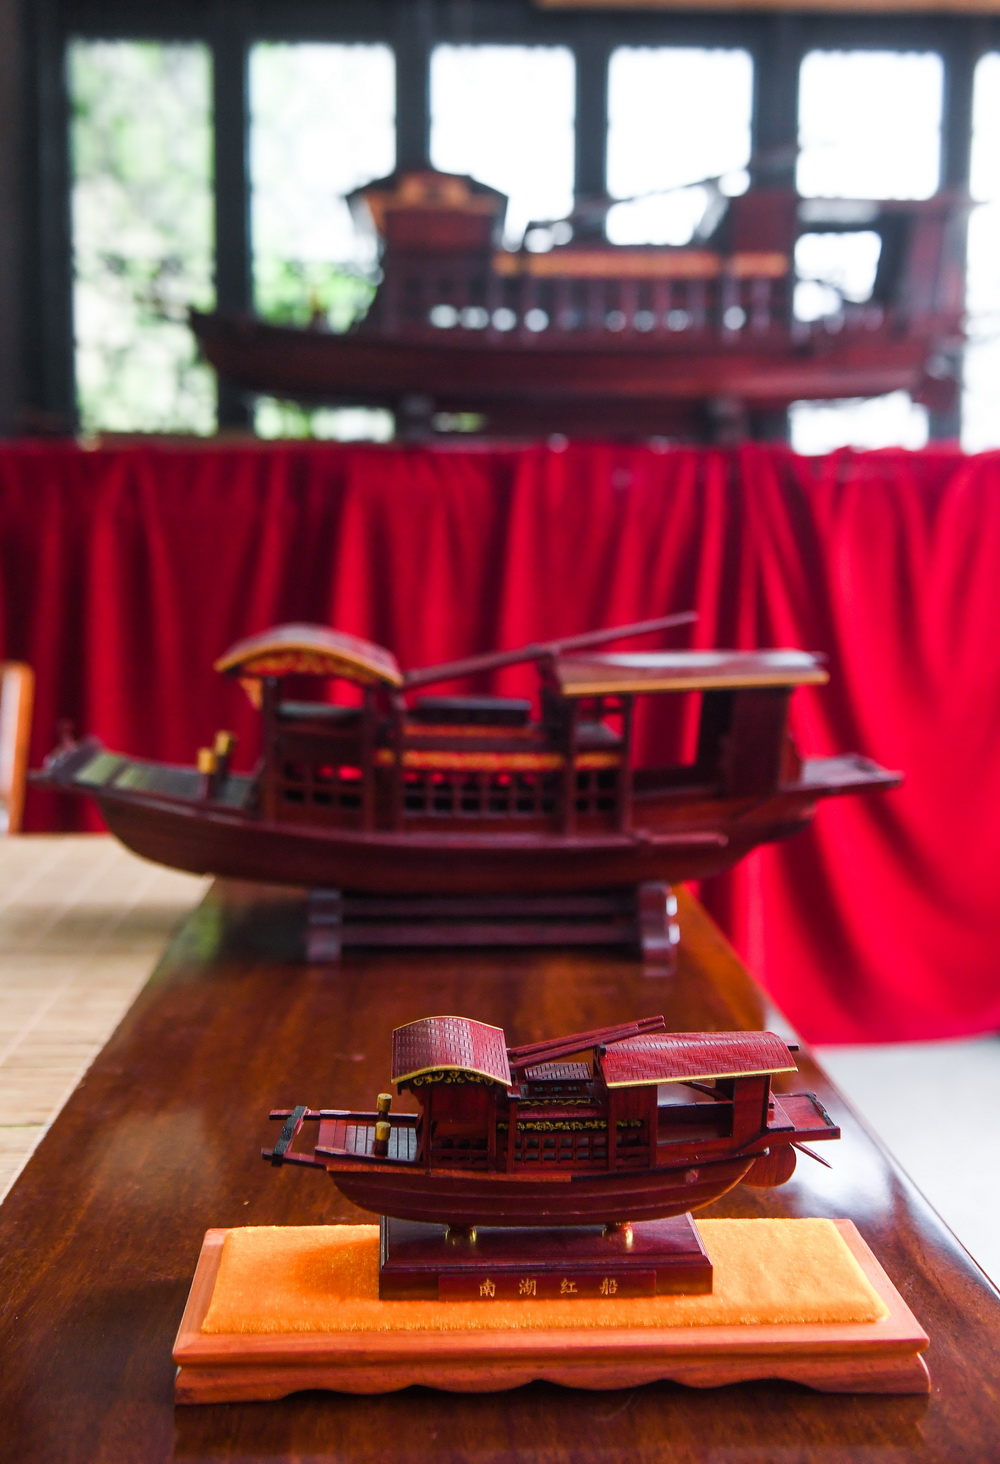 4月13日拍摄的不同尺寸的南湖红船模型。